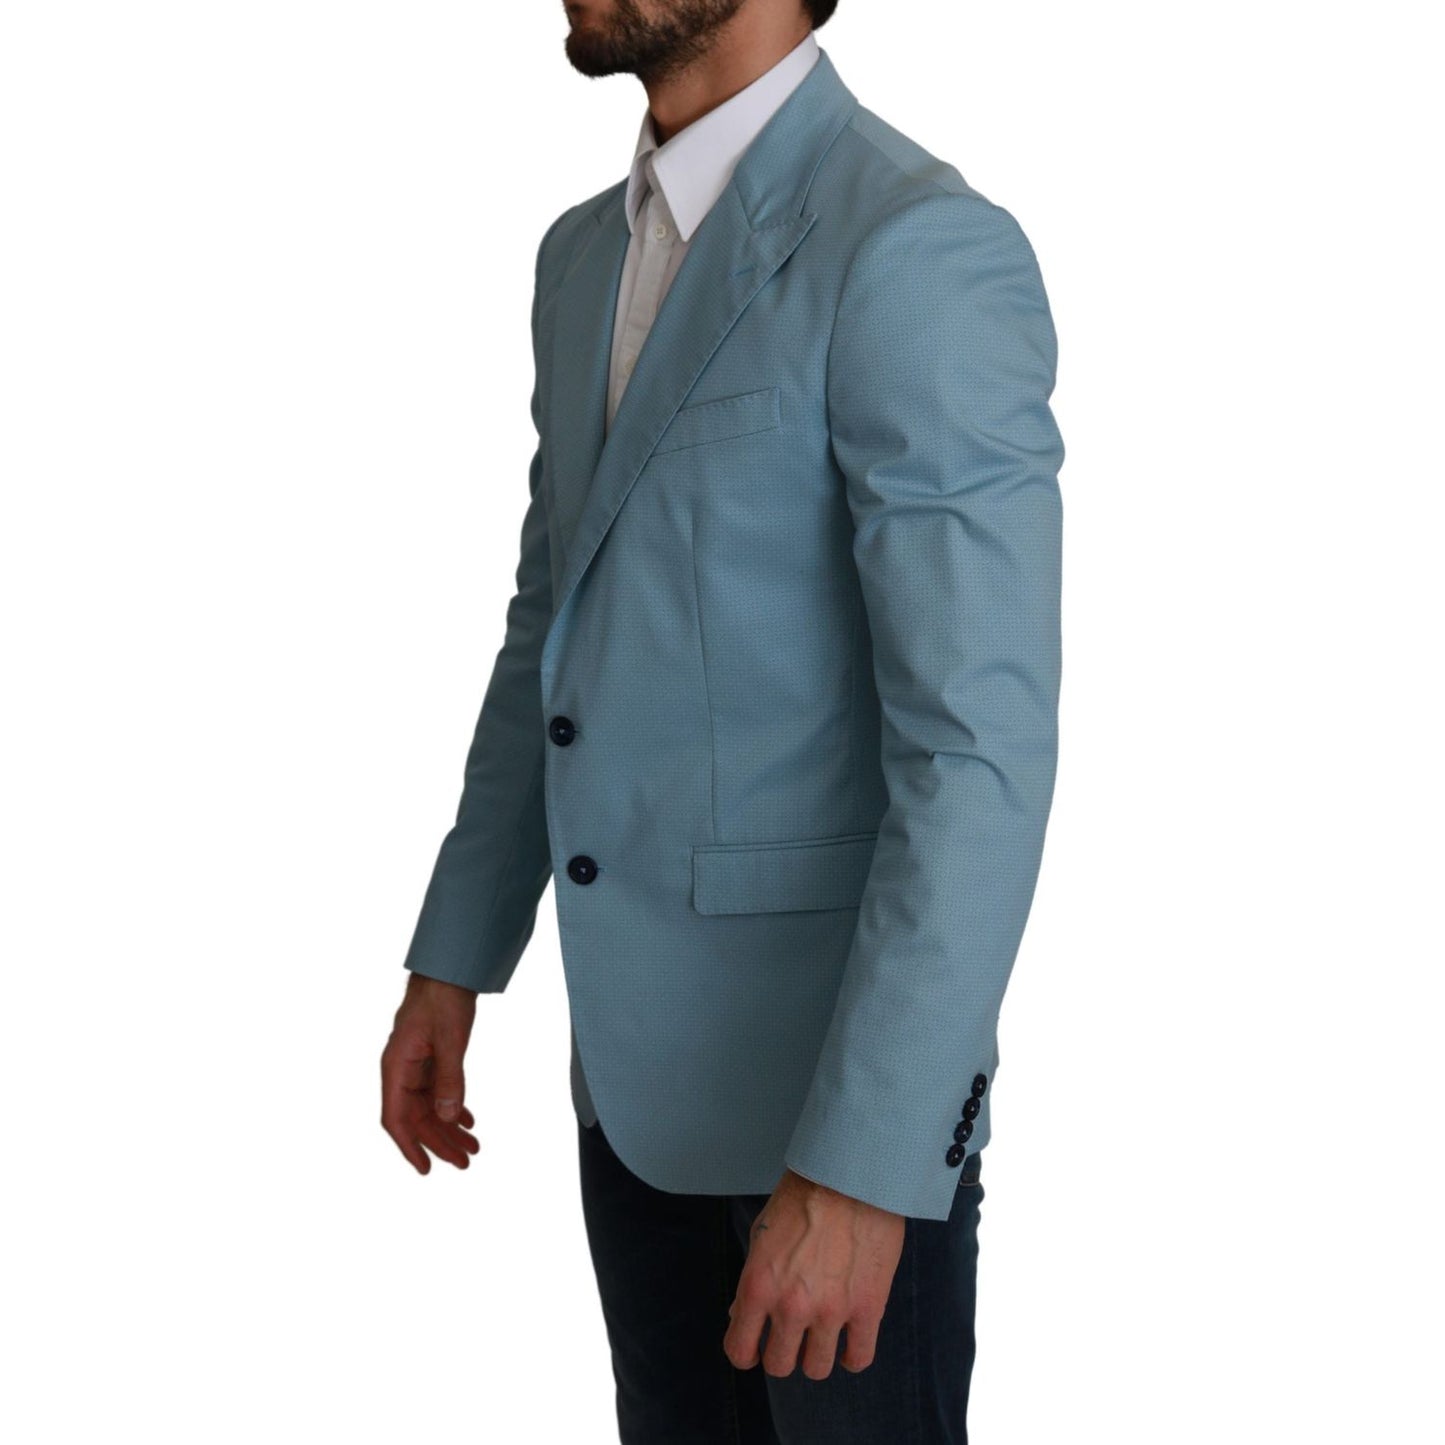 Dolce & Gabbana Elegant Blue Fantasy Pattern Blazer blue-slim-fit-coat-jacket-martini-blazer IMG_1188-scaled-94896bb9-968.jpg